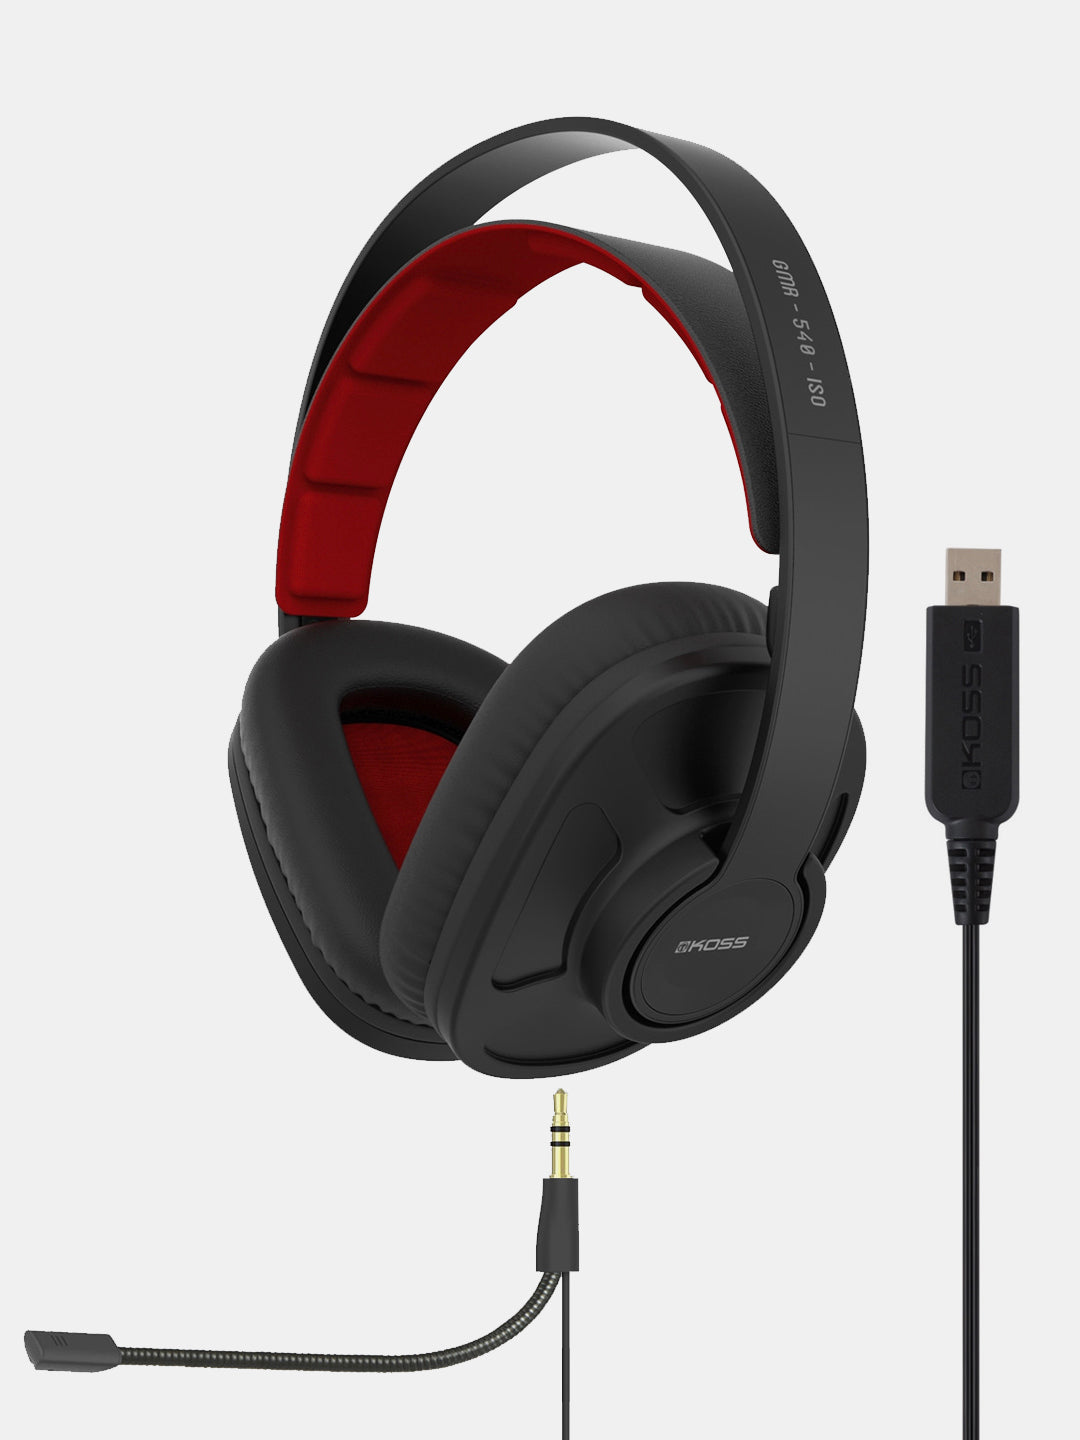 Koss GMR-540-ISO USB Gaming Headphones